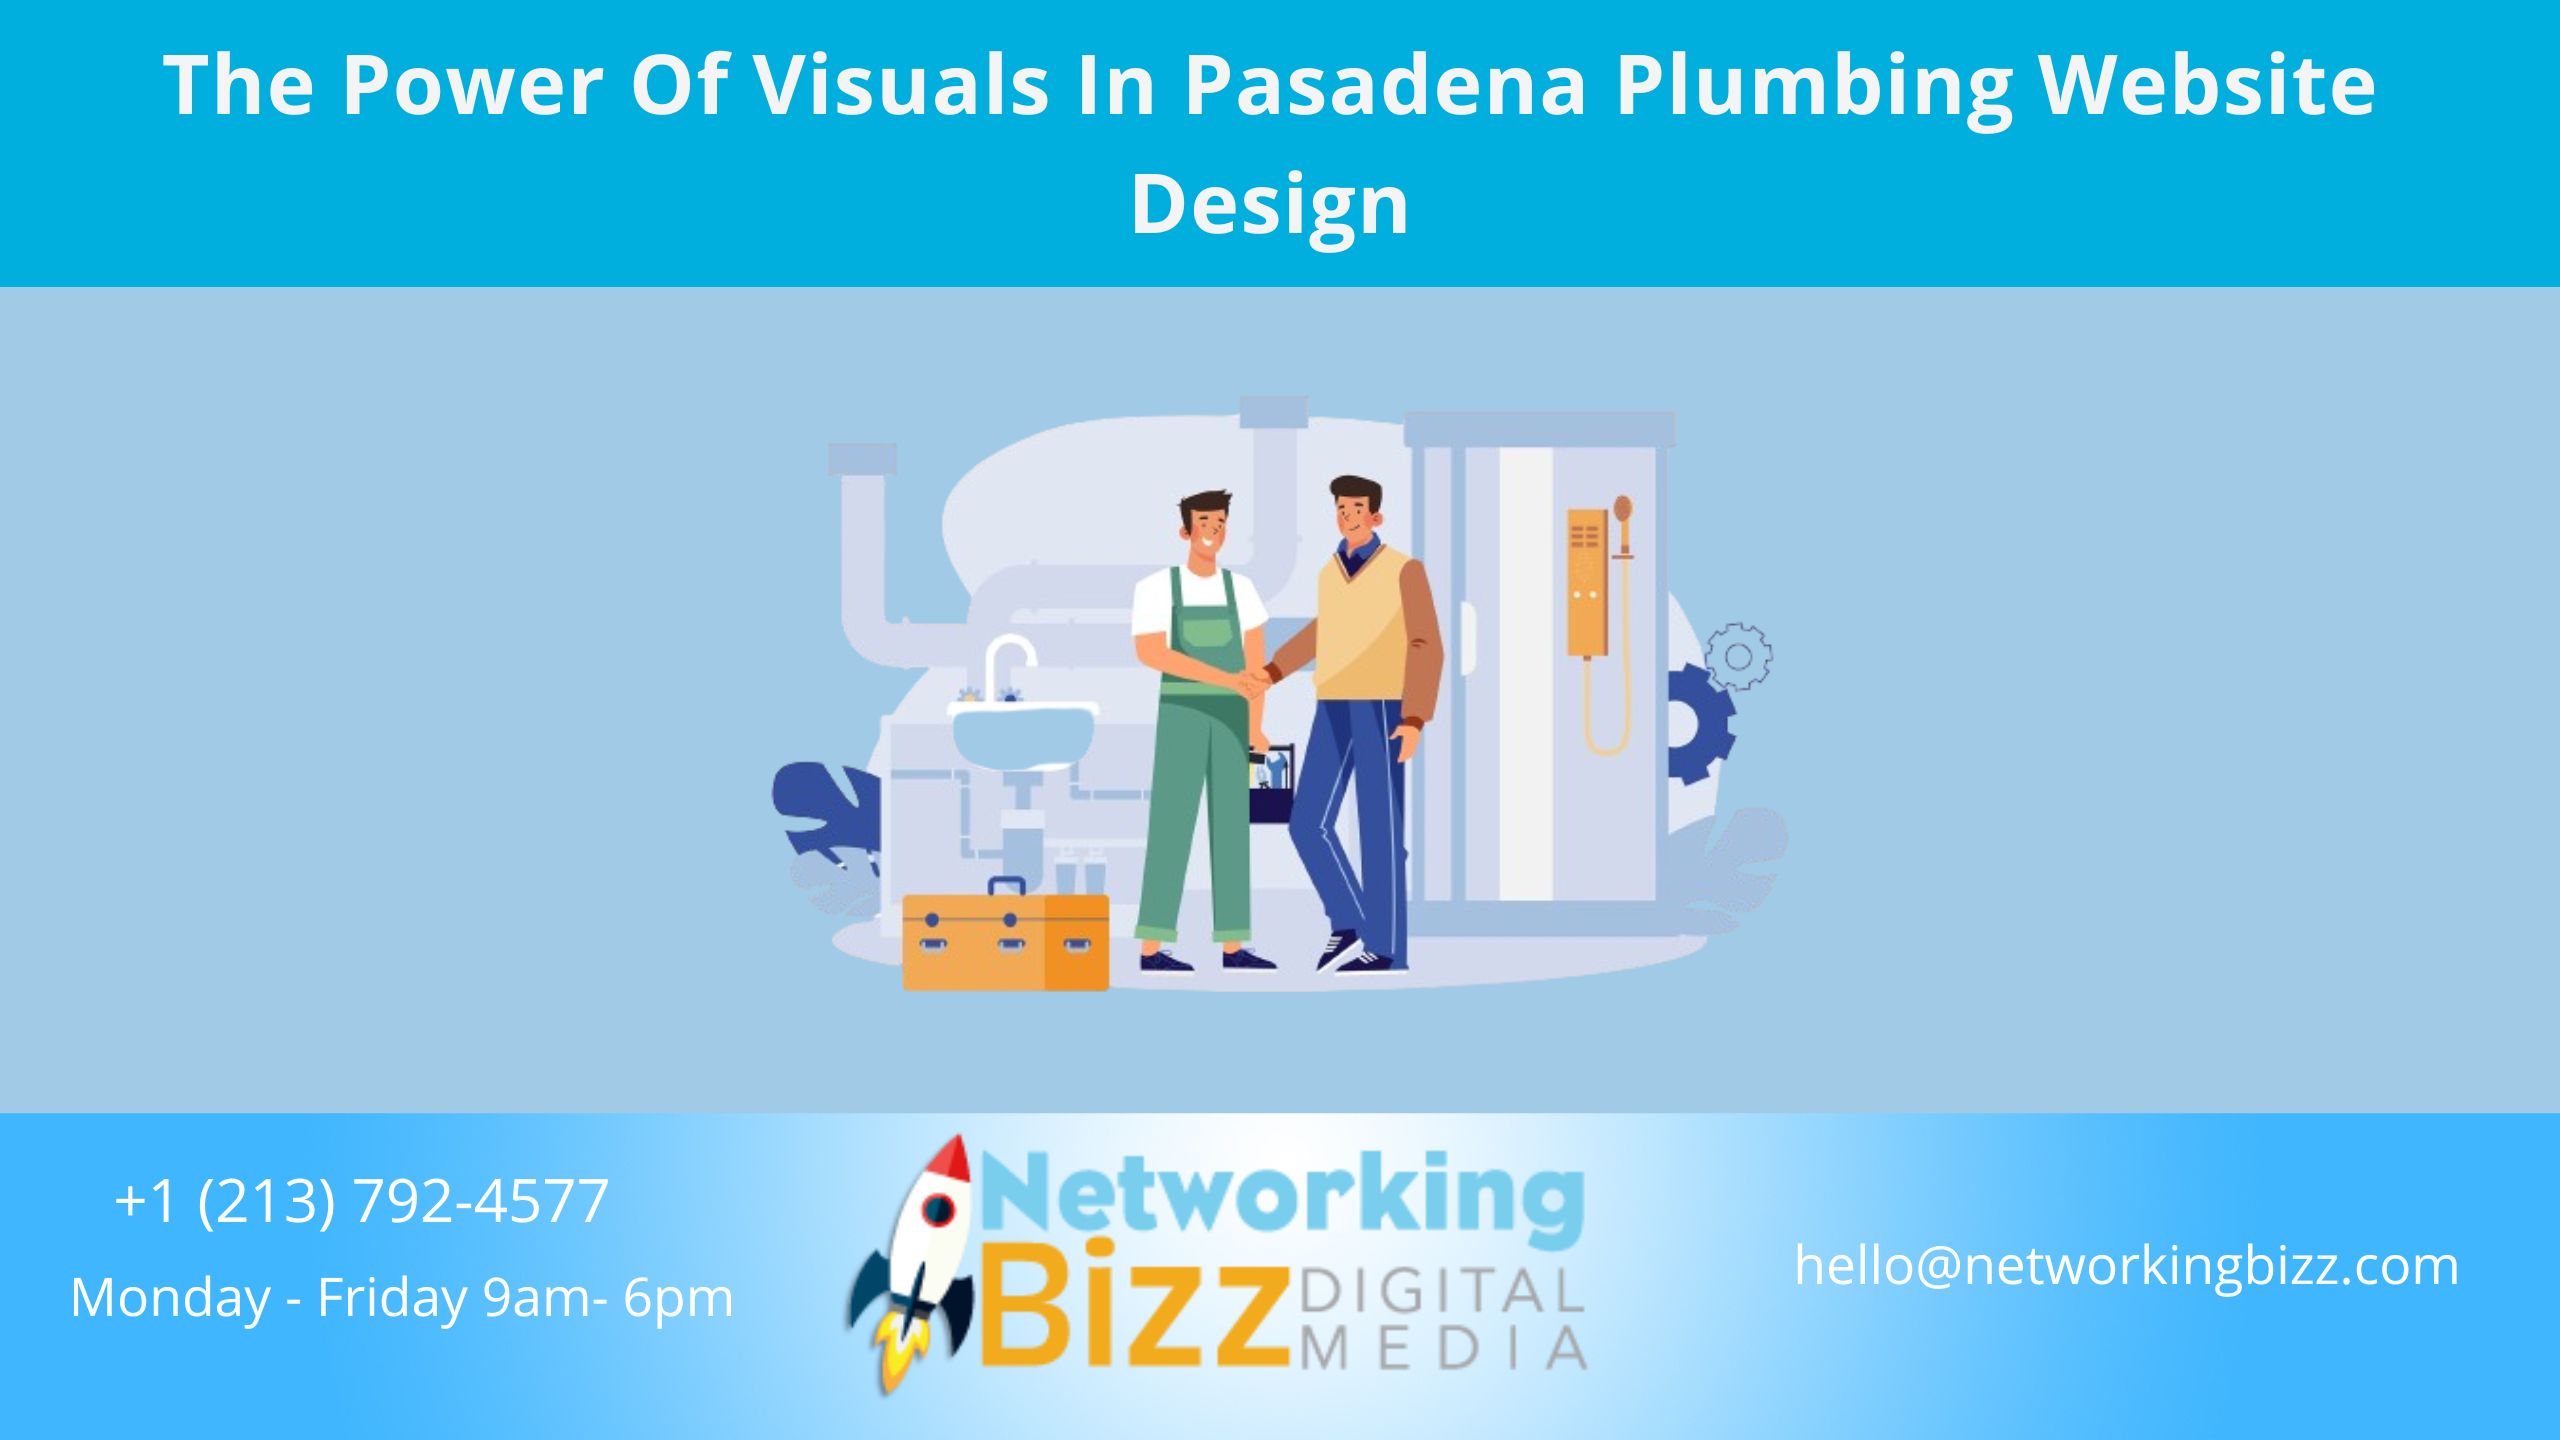 The Power Of Visuals In Pasadena Plumbing Website Design